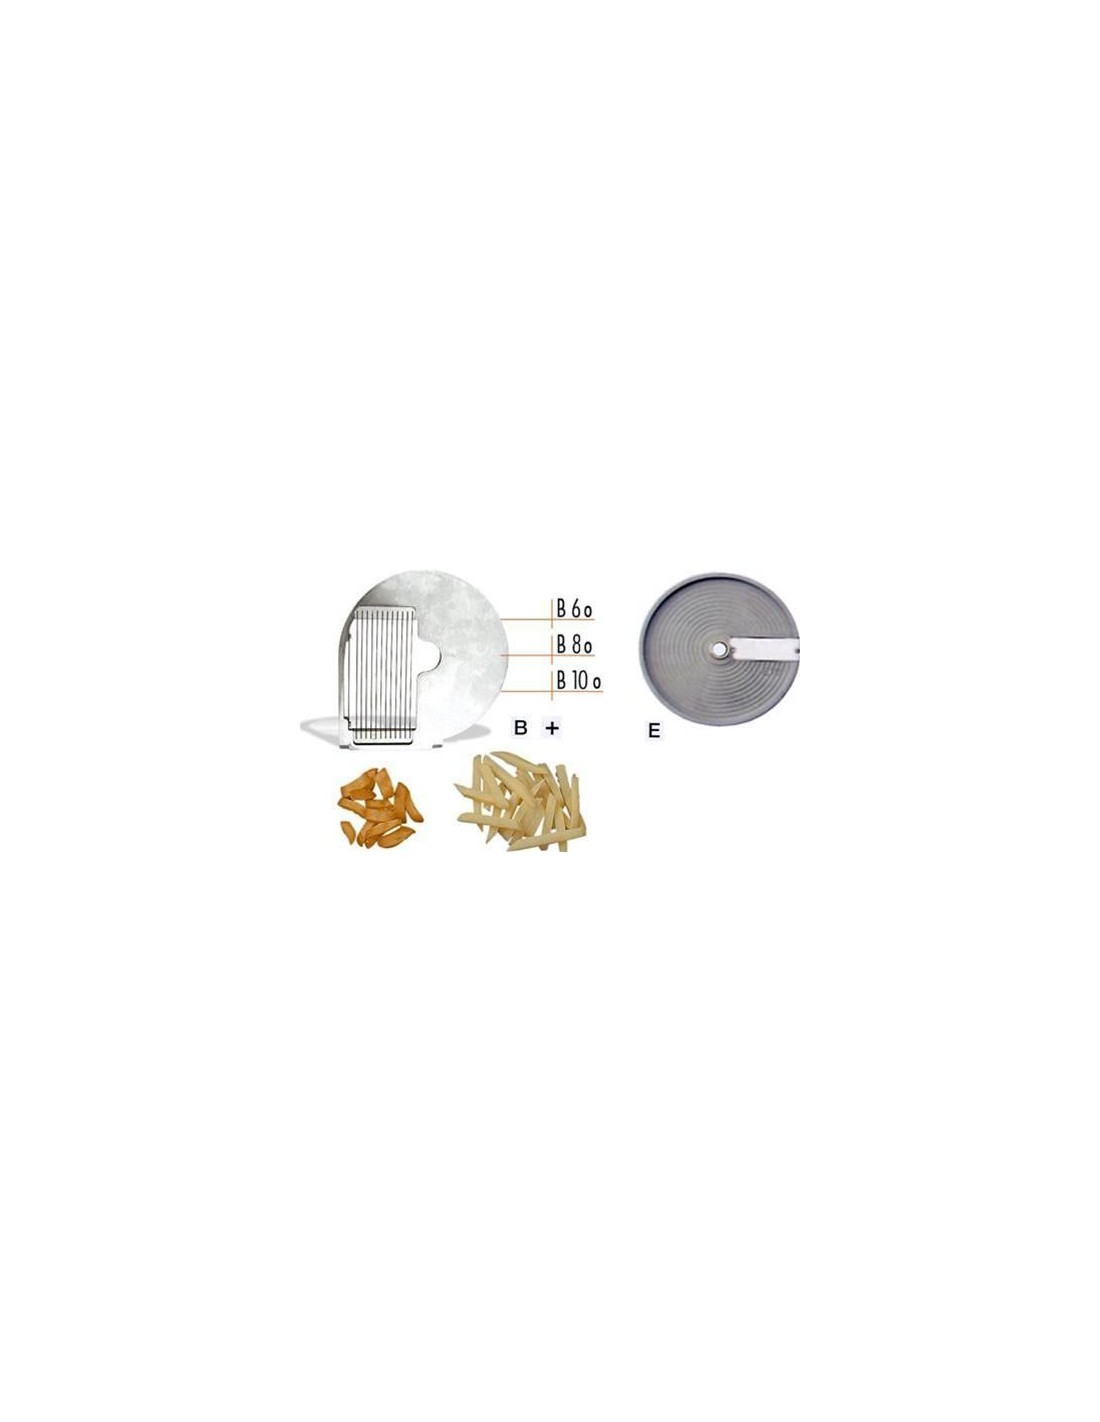 Disco tagliaverdura - per modello chef - per BASTONCINI ONDULATI - Taglio spessore mm 6 - ondulato - da usare con disco CEM-E(co